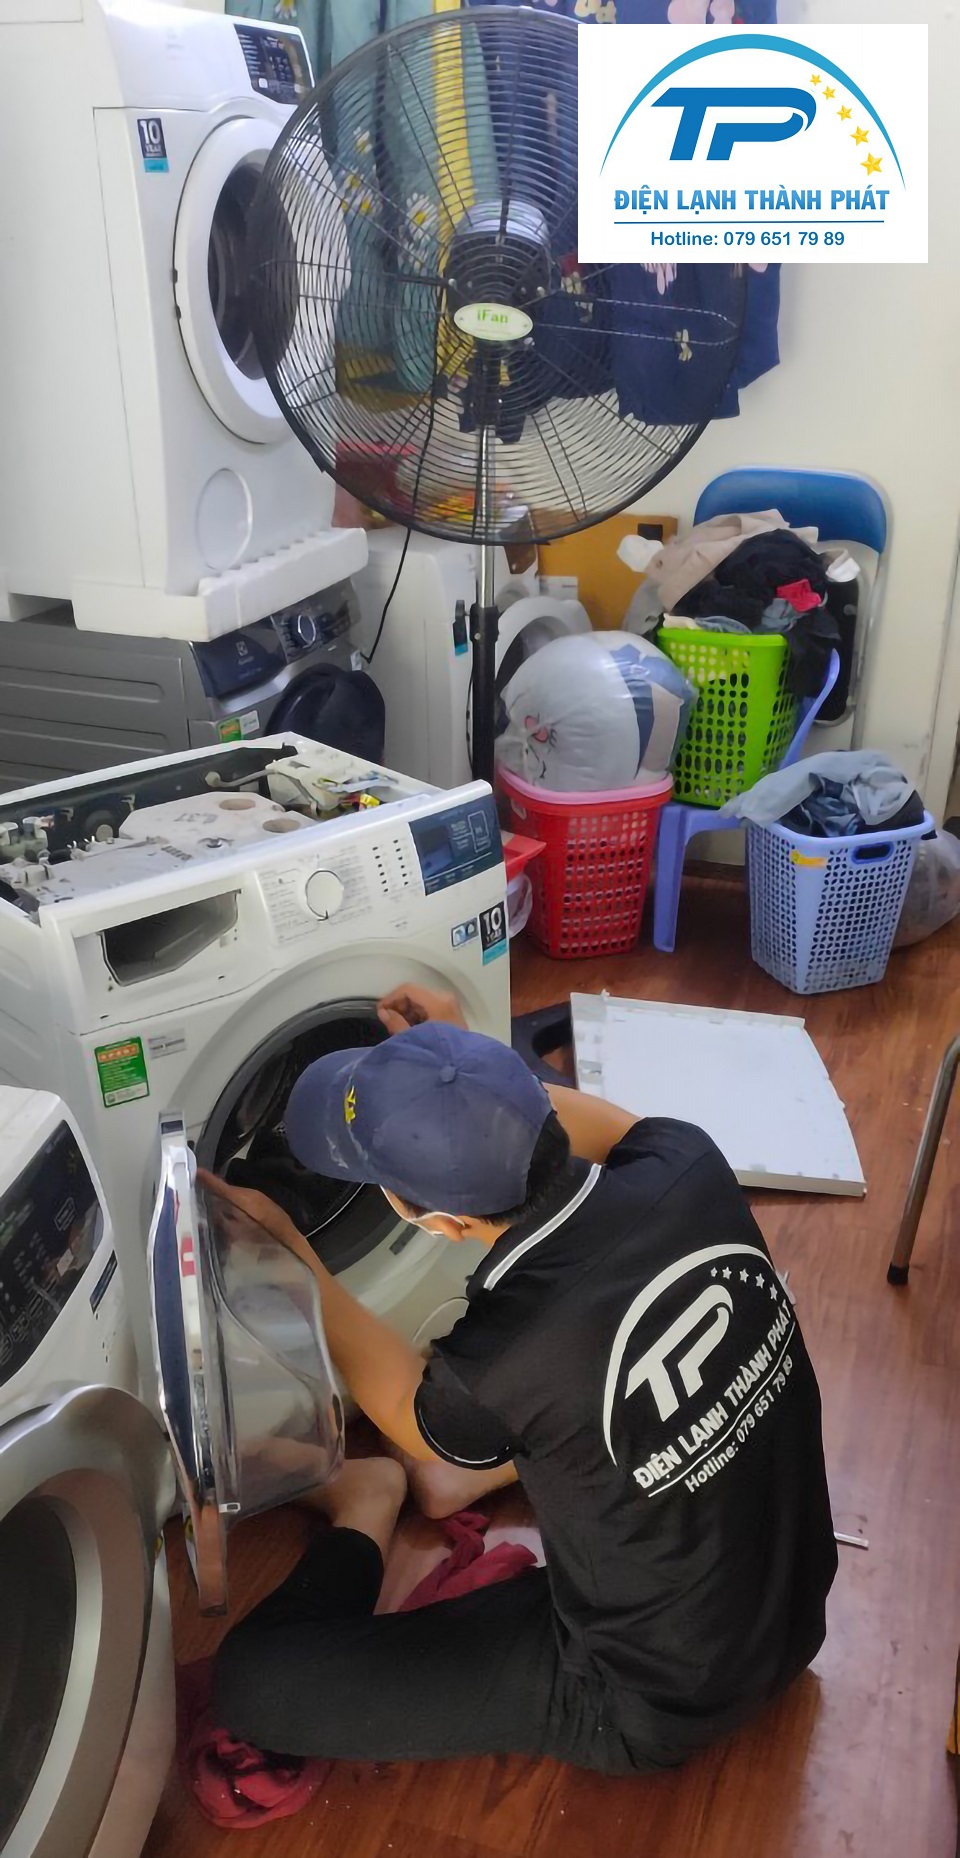 Thành Phát nhận sửa máy giặt Quận 6 uy tín, chuyên nghiệp cho khách hàng.